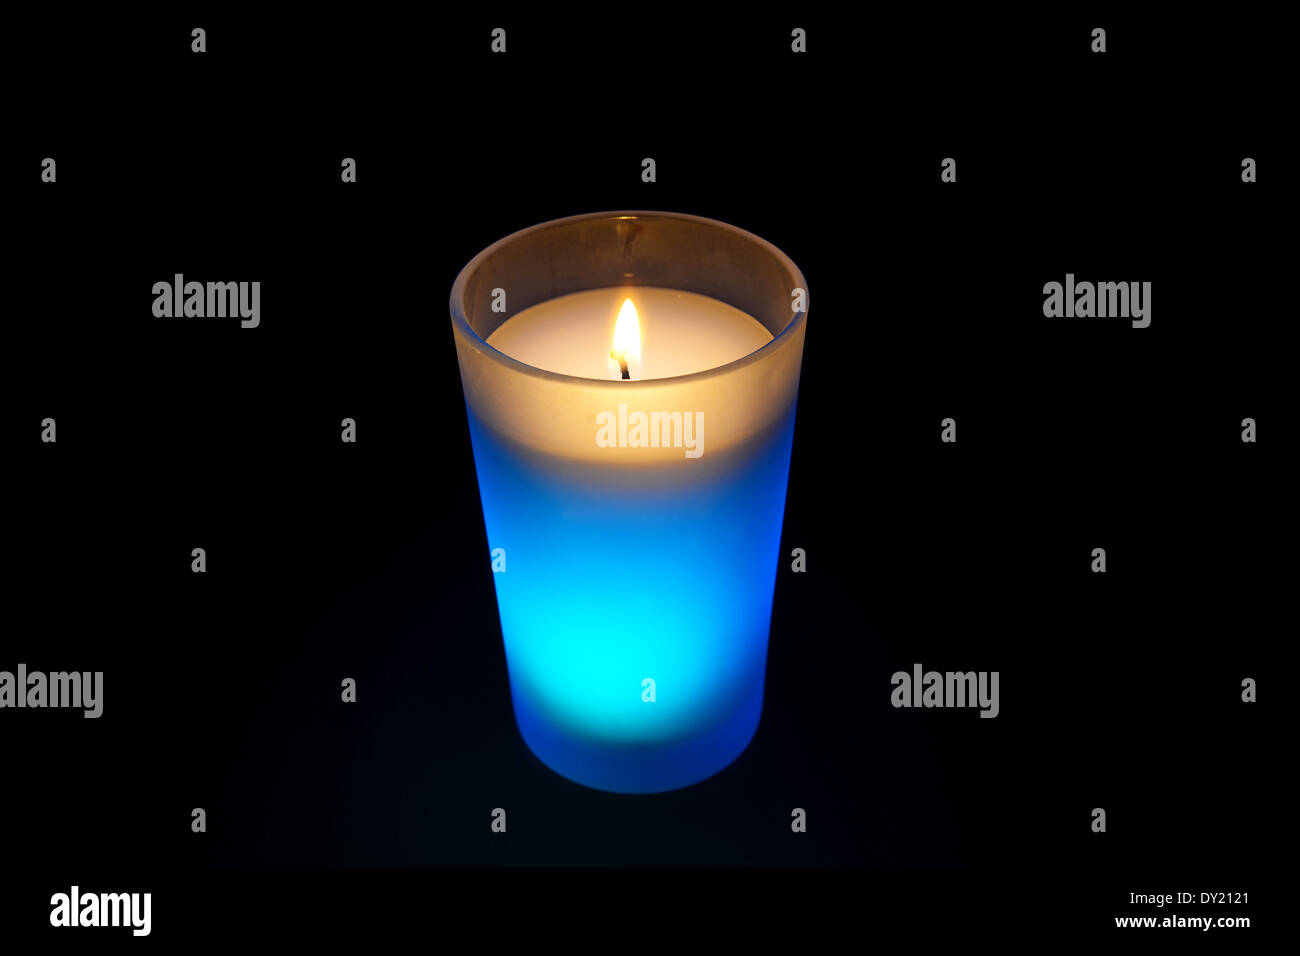 burning light blue candle isolated on black background Stock Photo